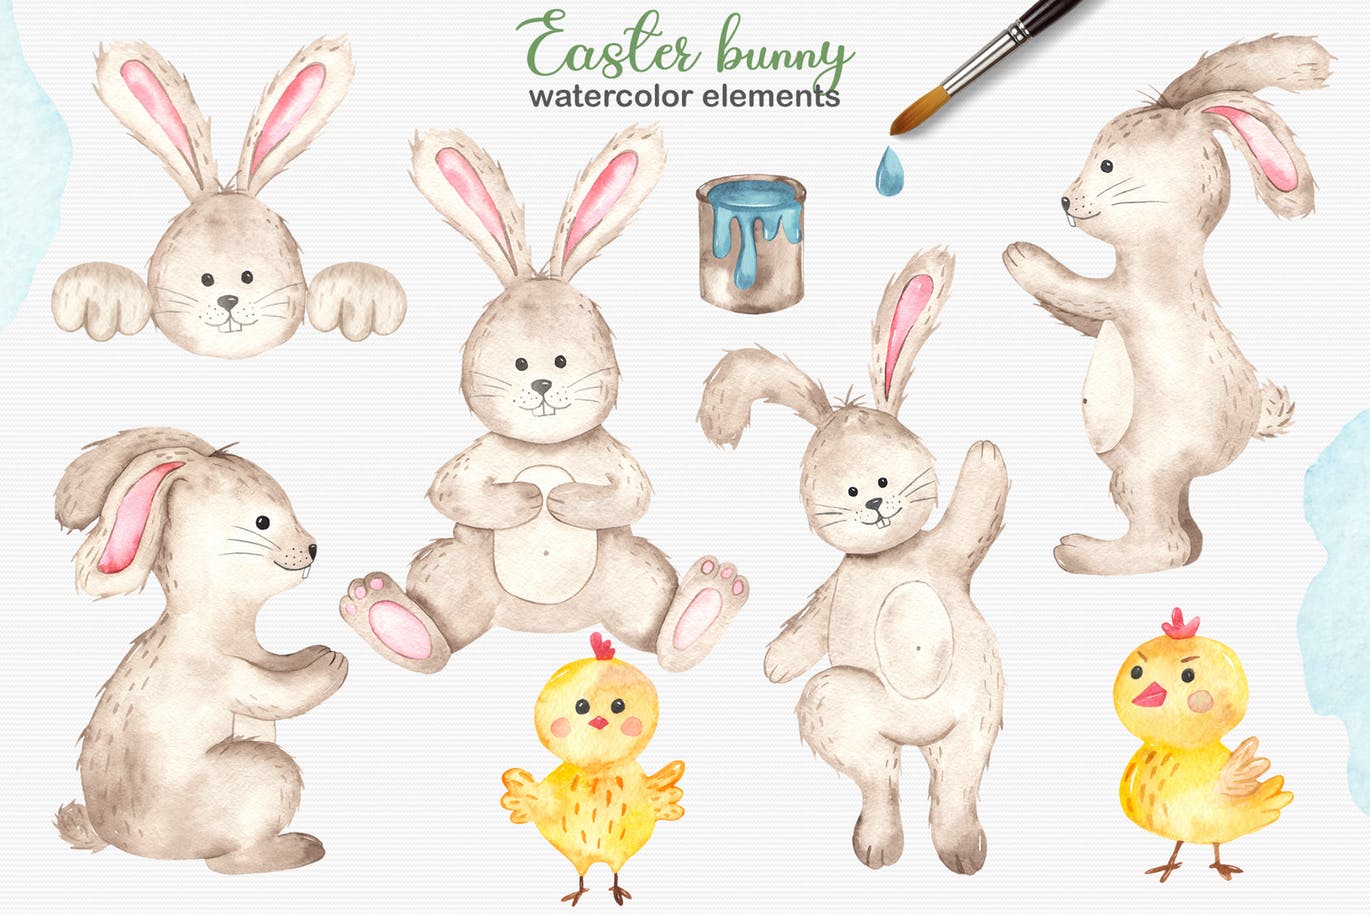 复活节兔子水彩手绘素材套装 Watercolor Easter Bunny collection插图(1)